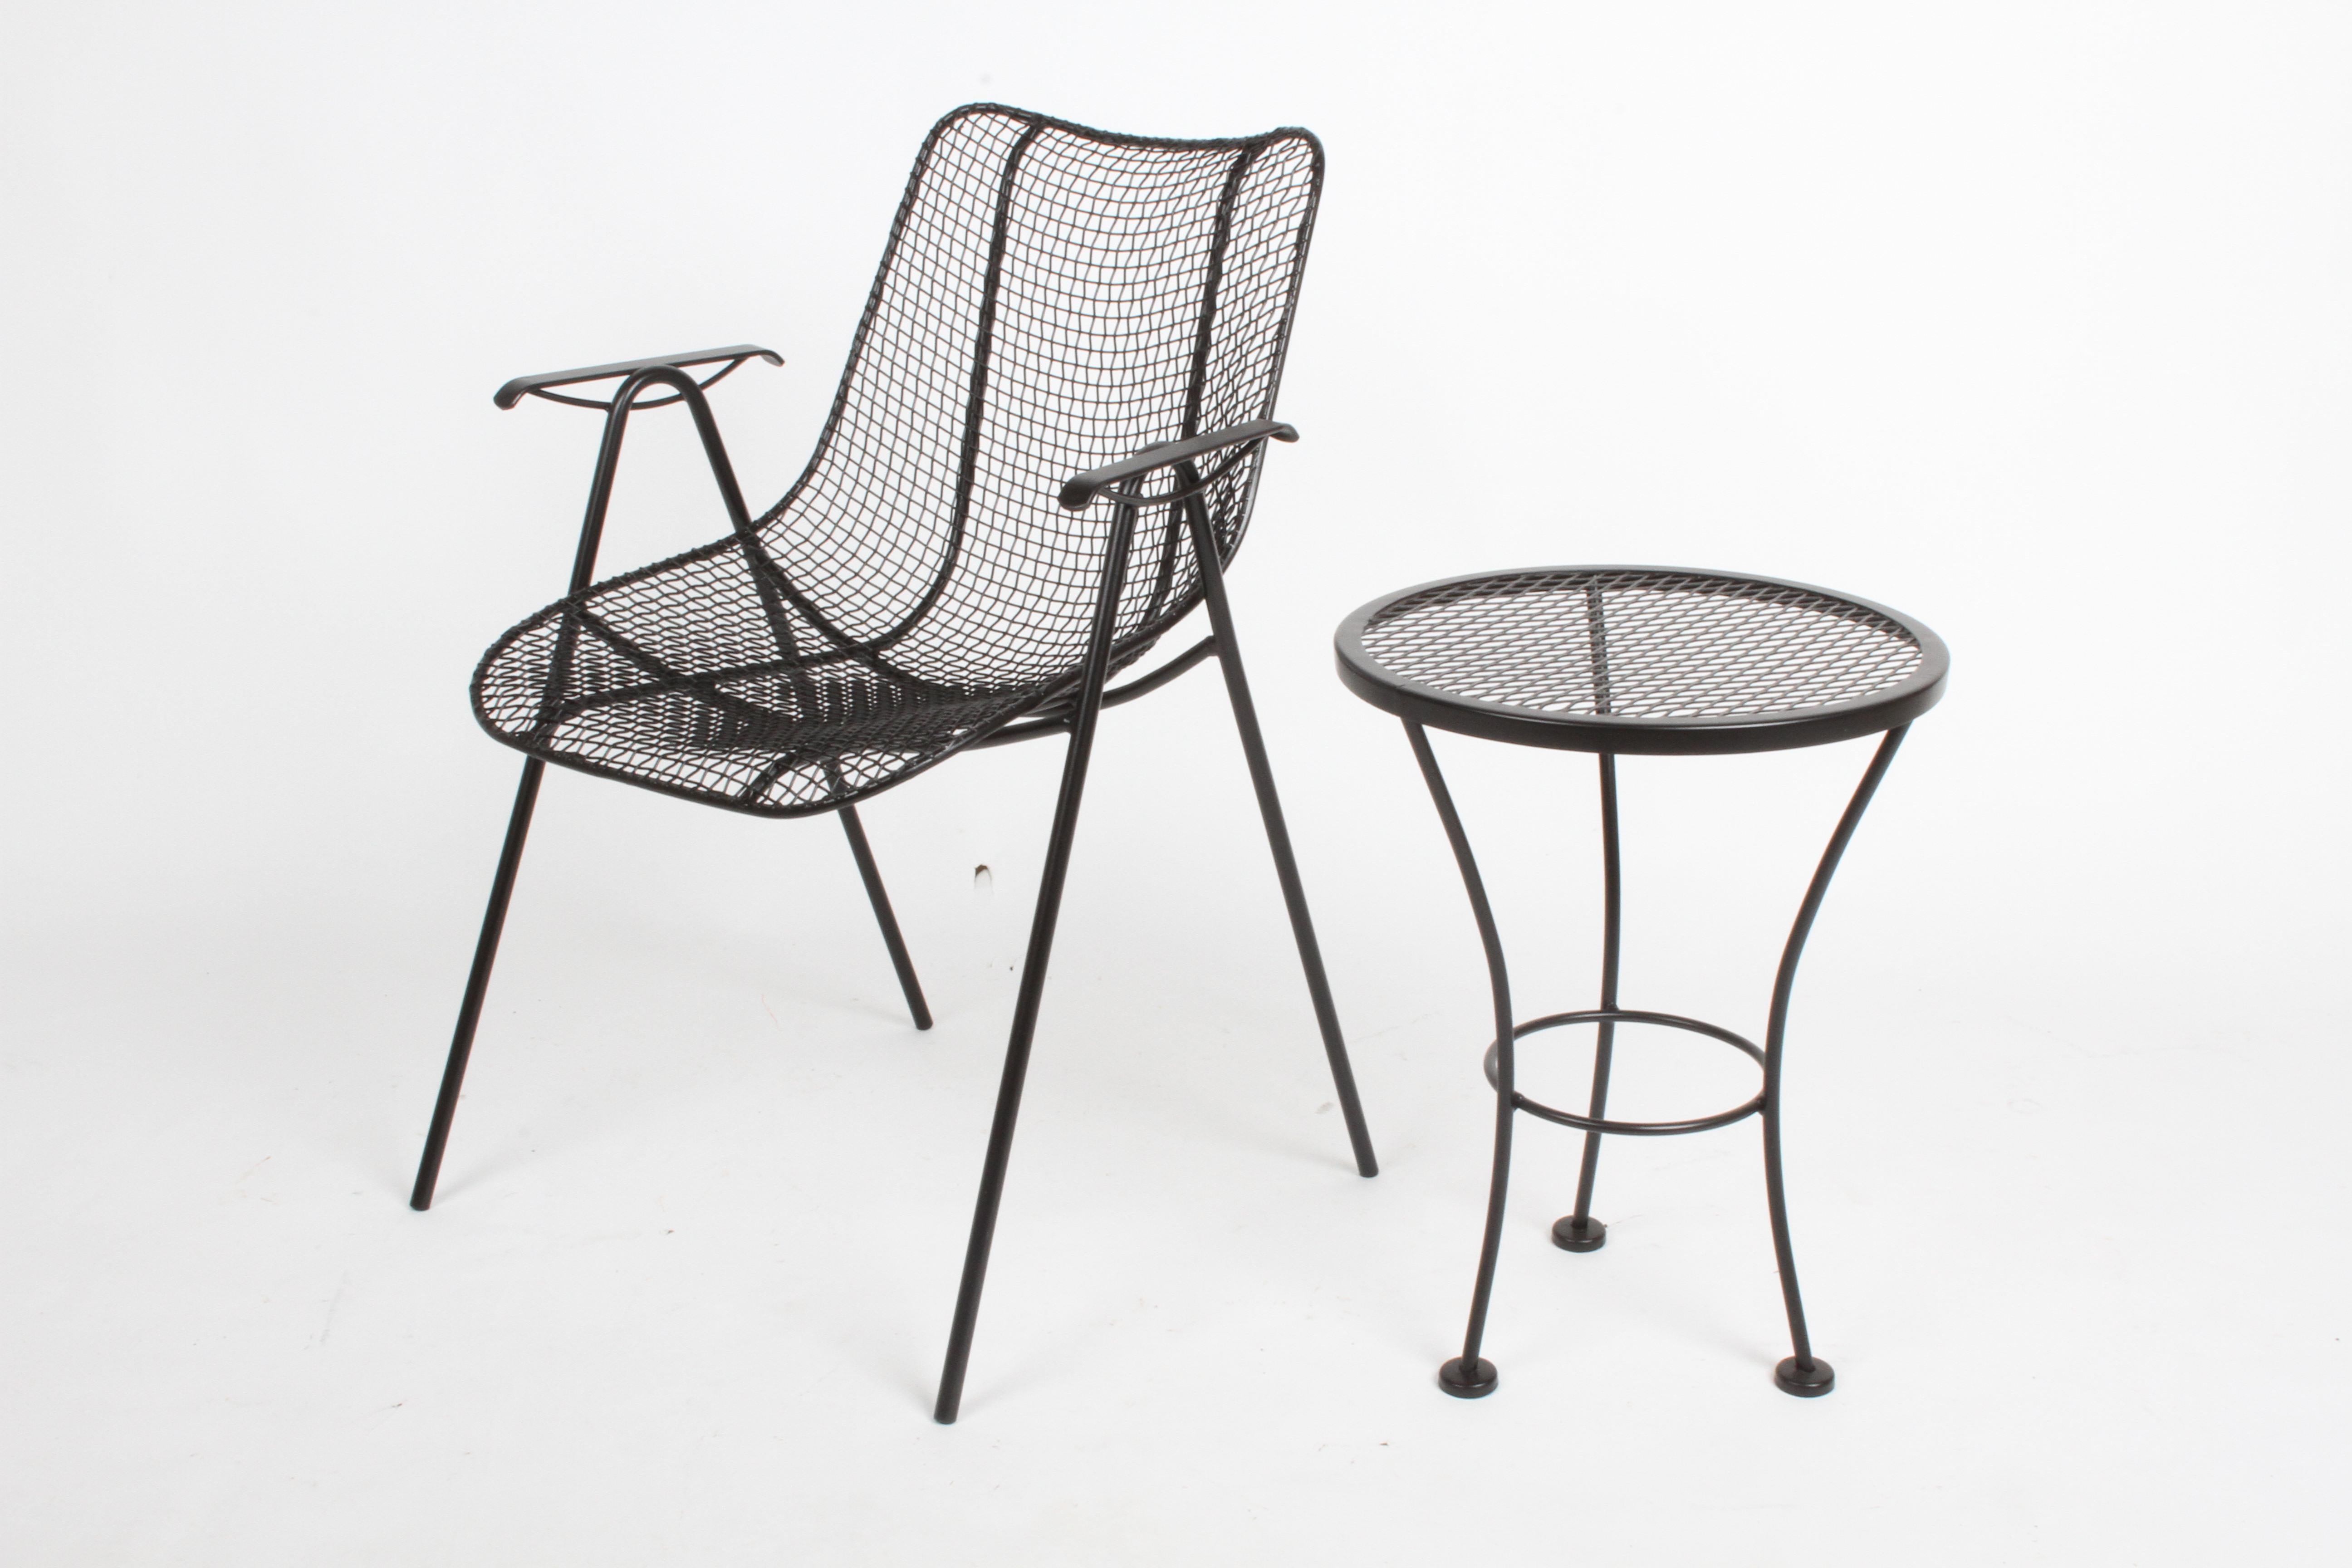 La table ronde d'appoint ou à boire conçue par Russell Woodard est souvent utilisée avec ses chaises et canapés de la ligne Sculptura. Cette table a été sablée, plongée dans un inhibiteur de rouille et repeinte en noir satiné. Provenant de la